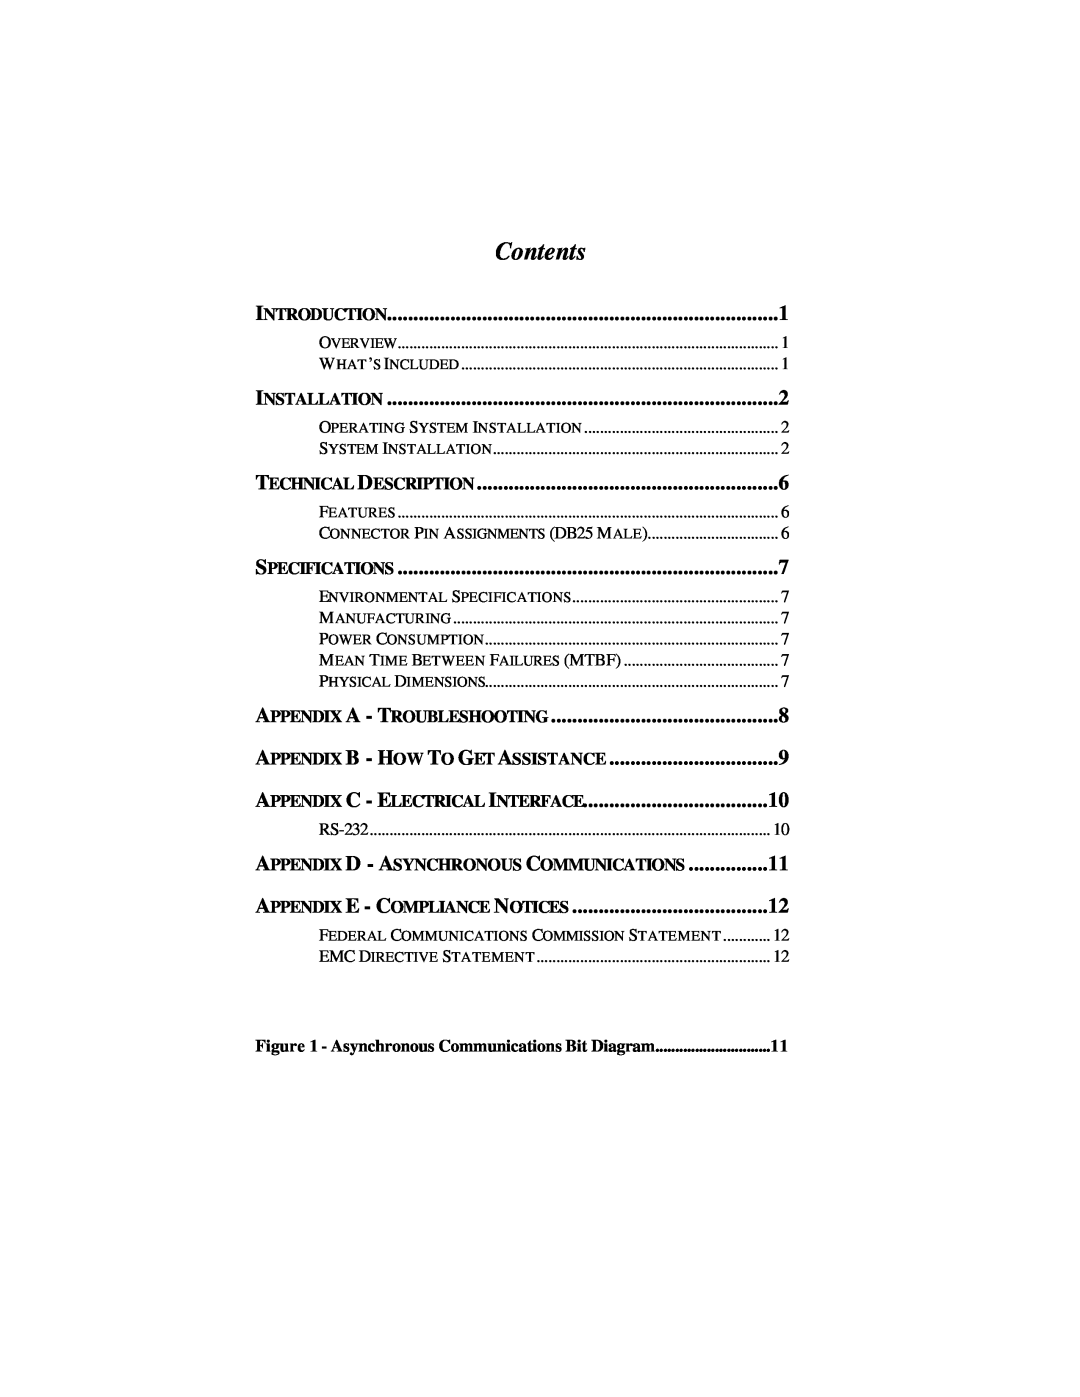 Omega RS-232 manual Appendix C - Electrical Interface, Contents, Appendix E - Compliance Notices, Technical Description 